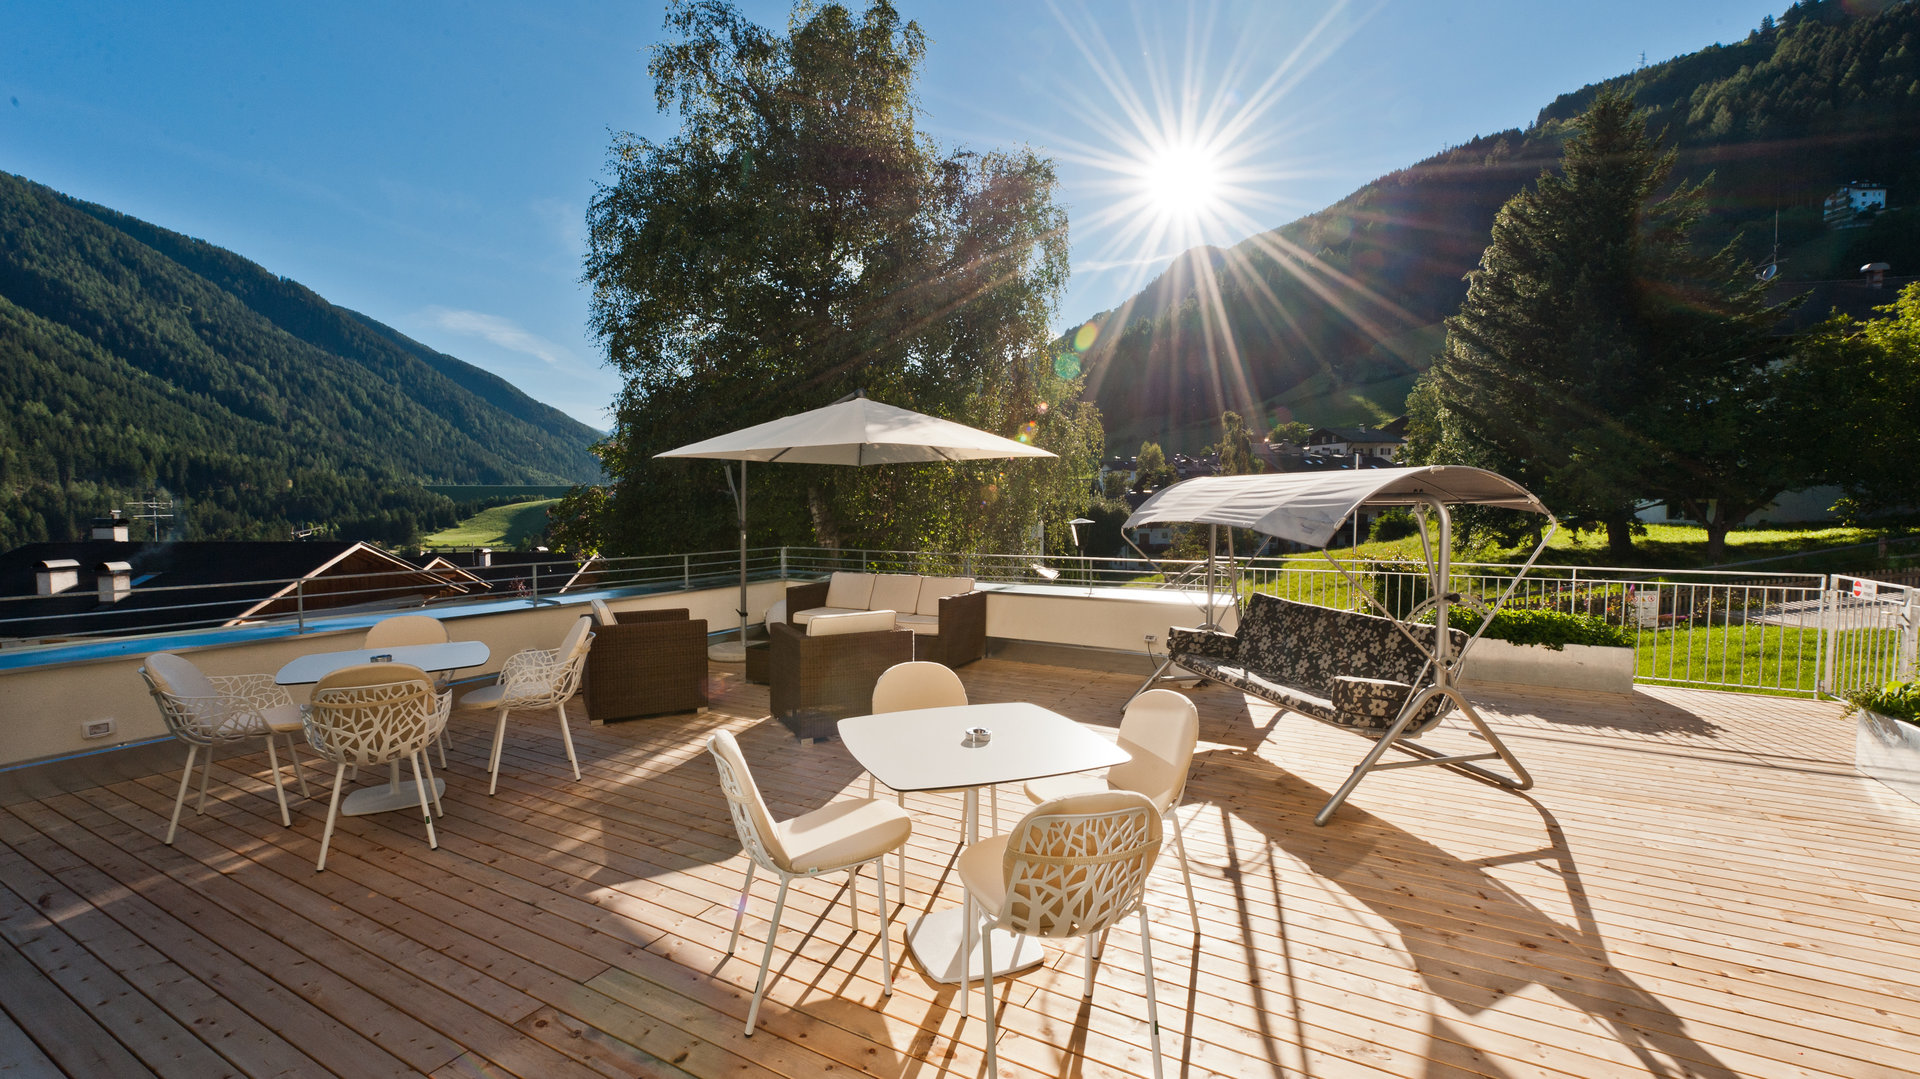 Hotel in Val d'Ultimo (Alto Adige) in posizione centrale, tranquilla e soleggiata con terrazza, giardino, piscina, centro benessere e vista panoramica sulle montagne.